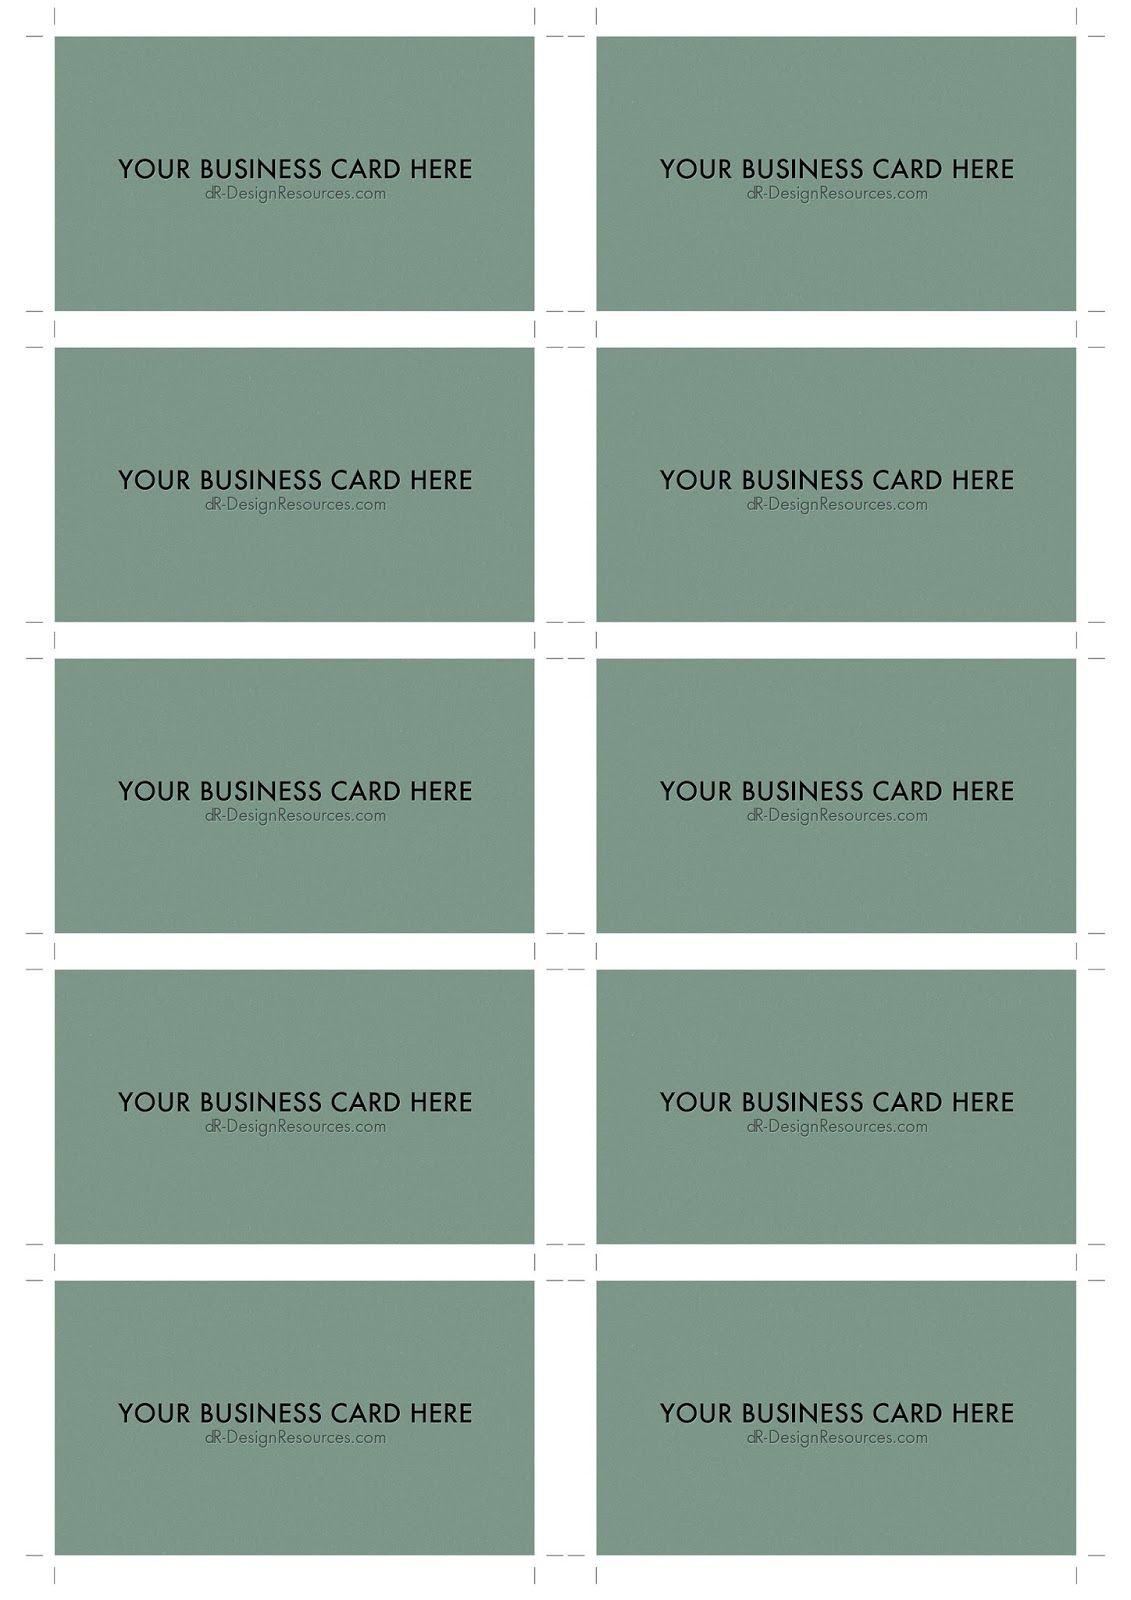 A4 Business Card Template Psd (10 Per Sheet) | Business Card In Photoshop Cs6 Business Card Template